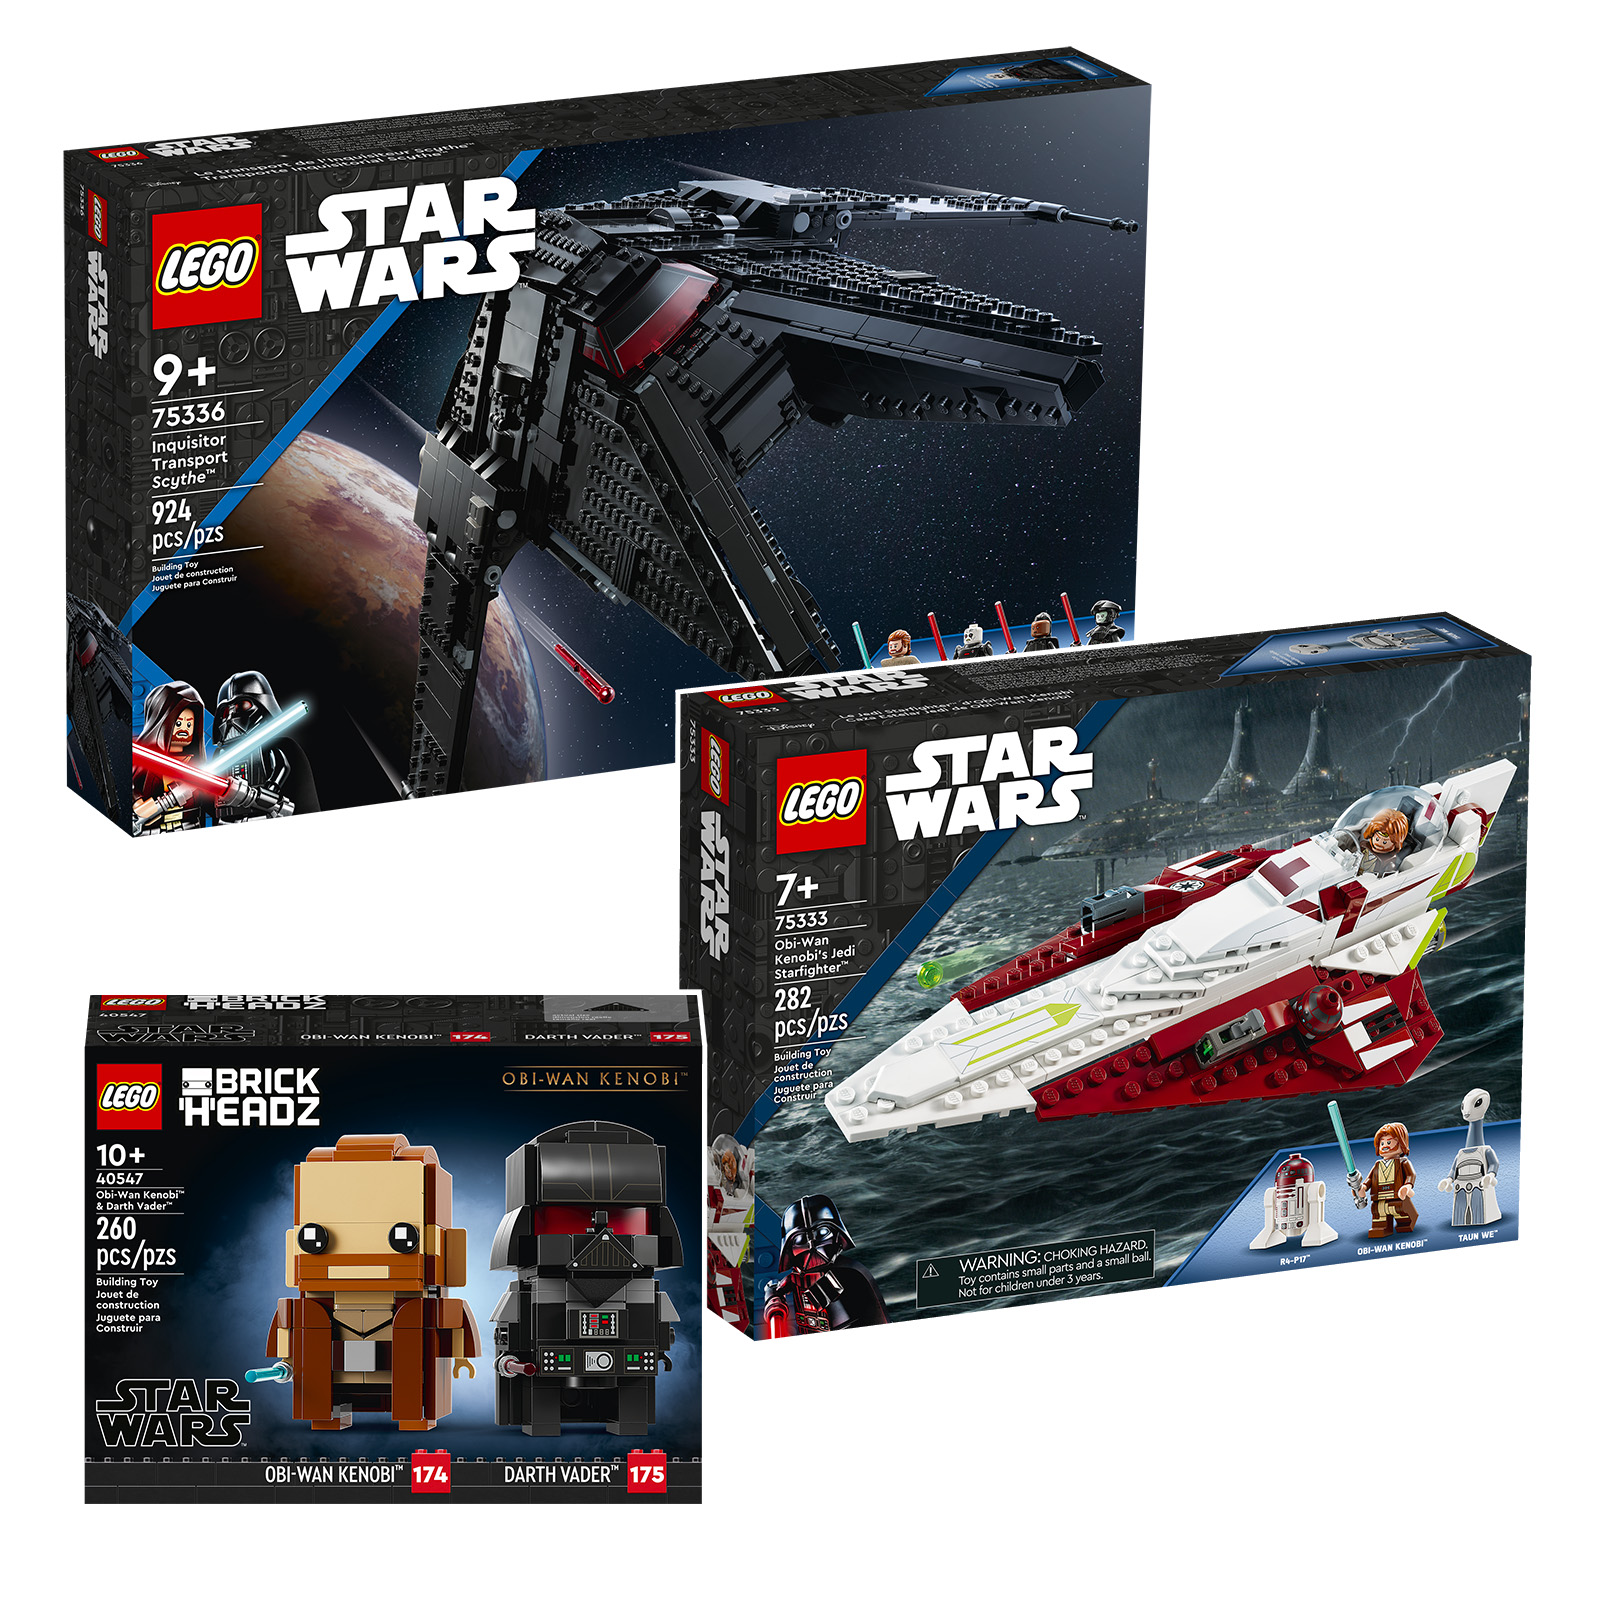 Nuut in LEGO Star Wars vir die tweede helfte van 2022: Obi-Wan Kenobi in al die souse